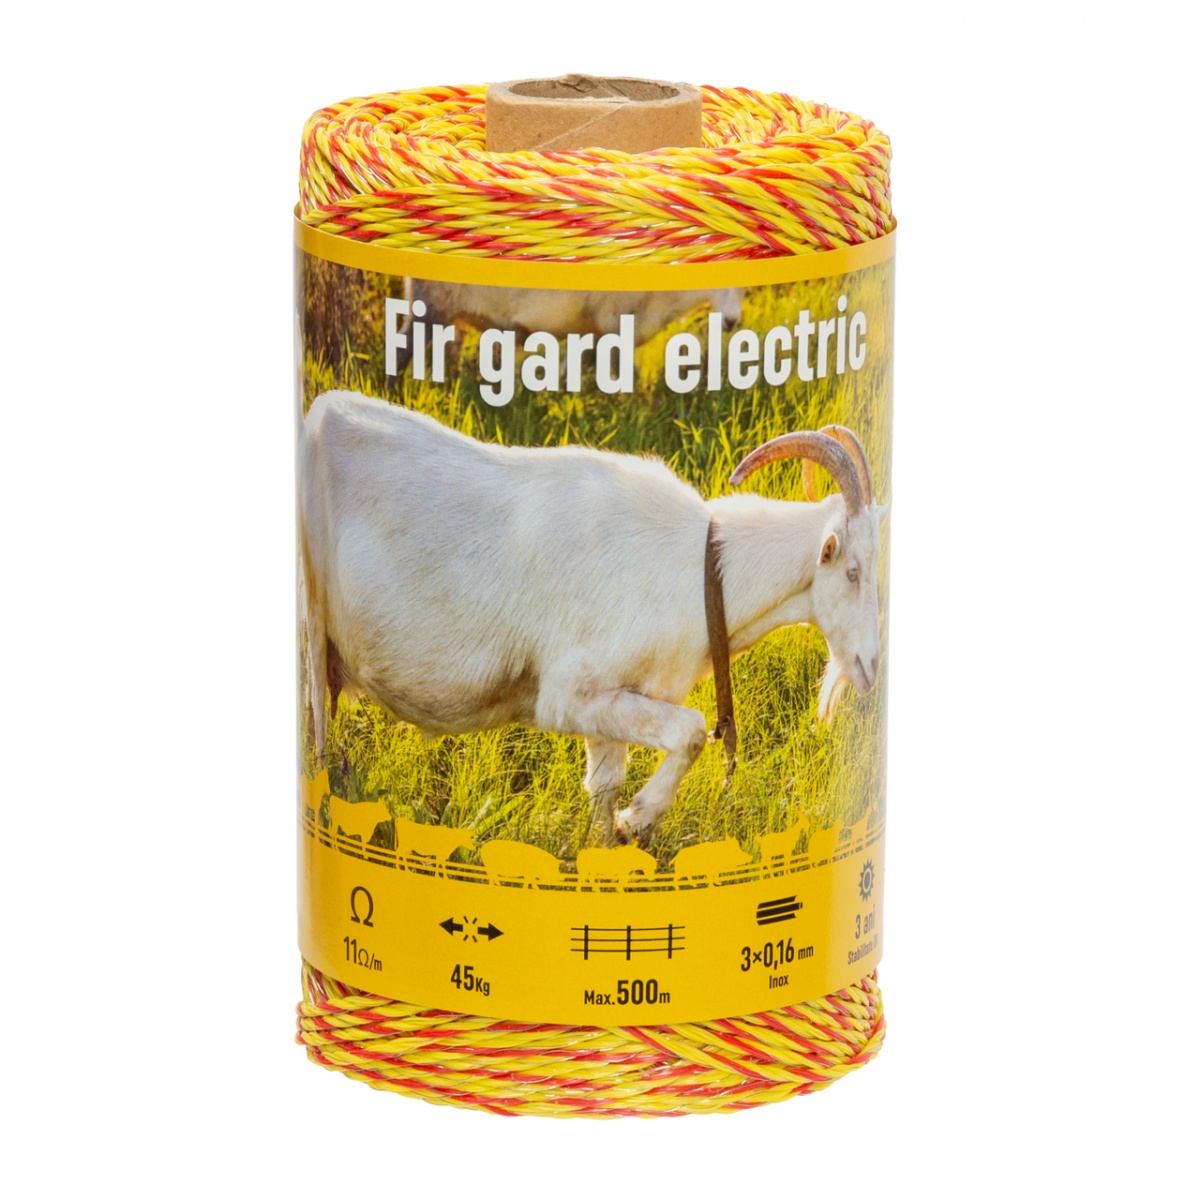 Fir gard electric - 250 m - 45 kg - 11 Ω/m